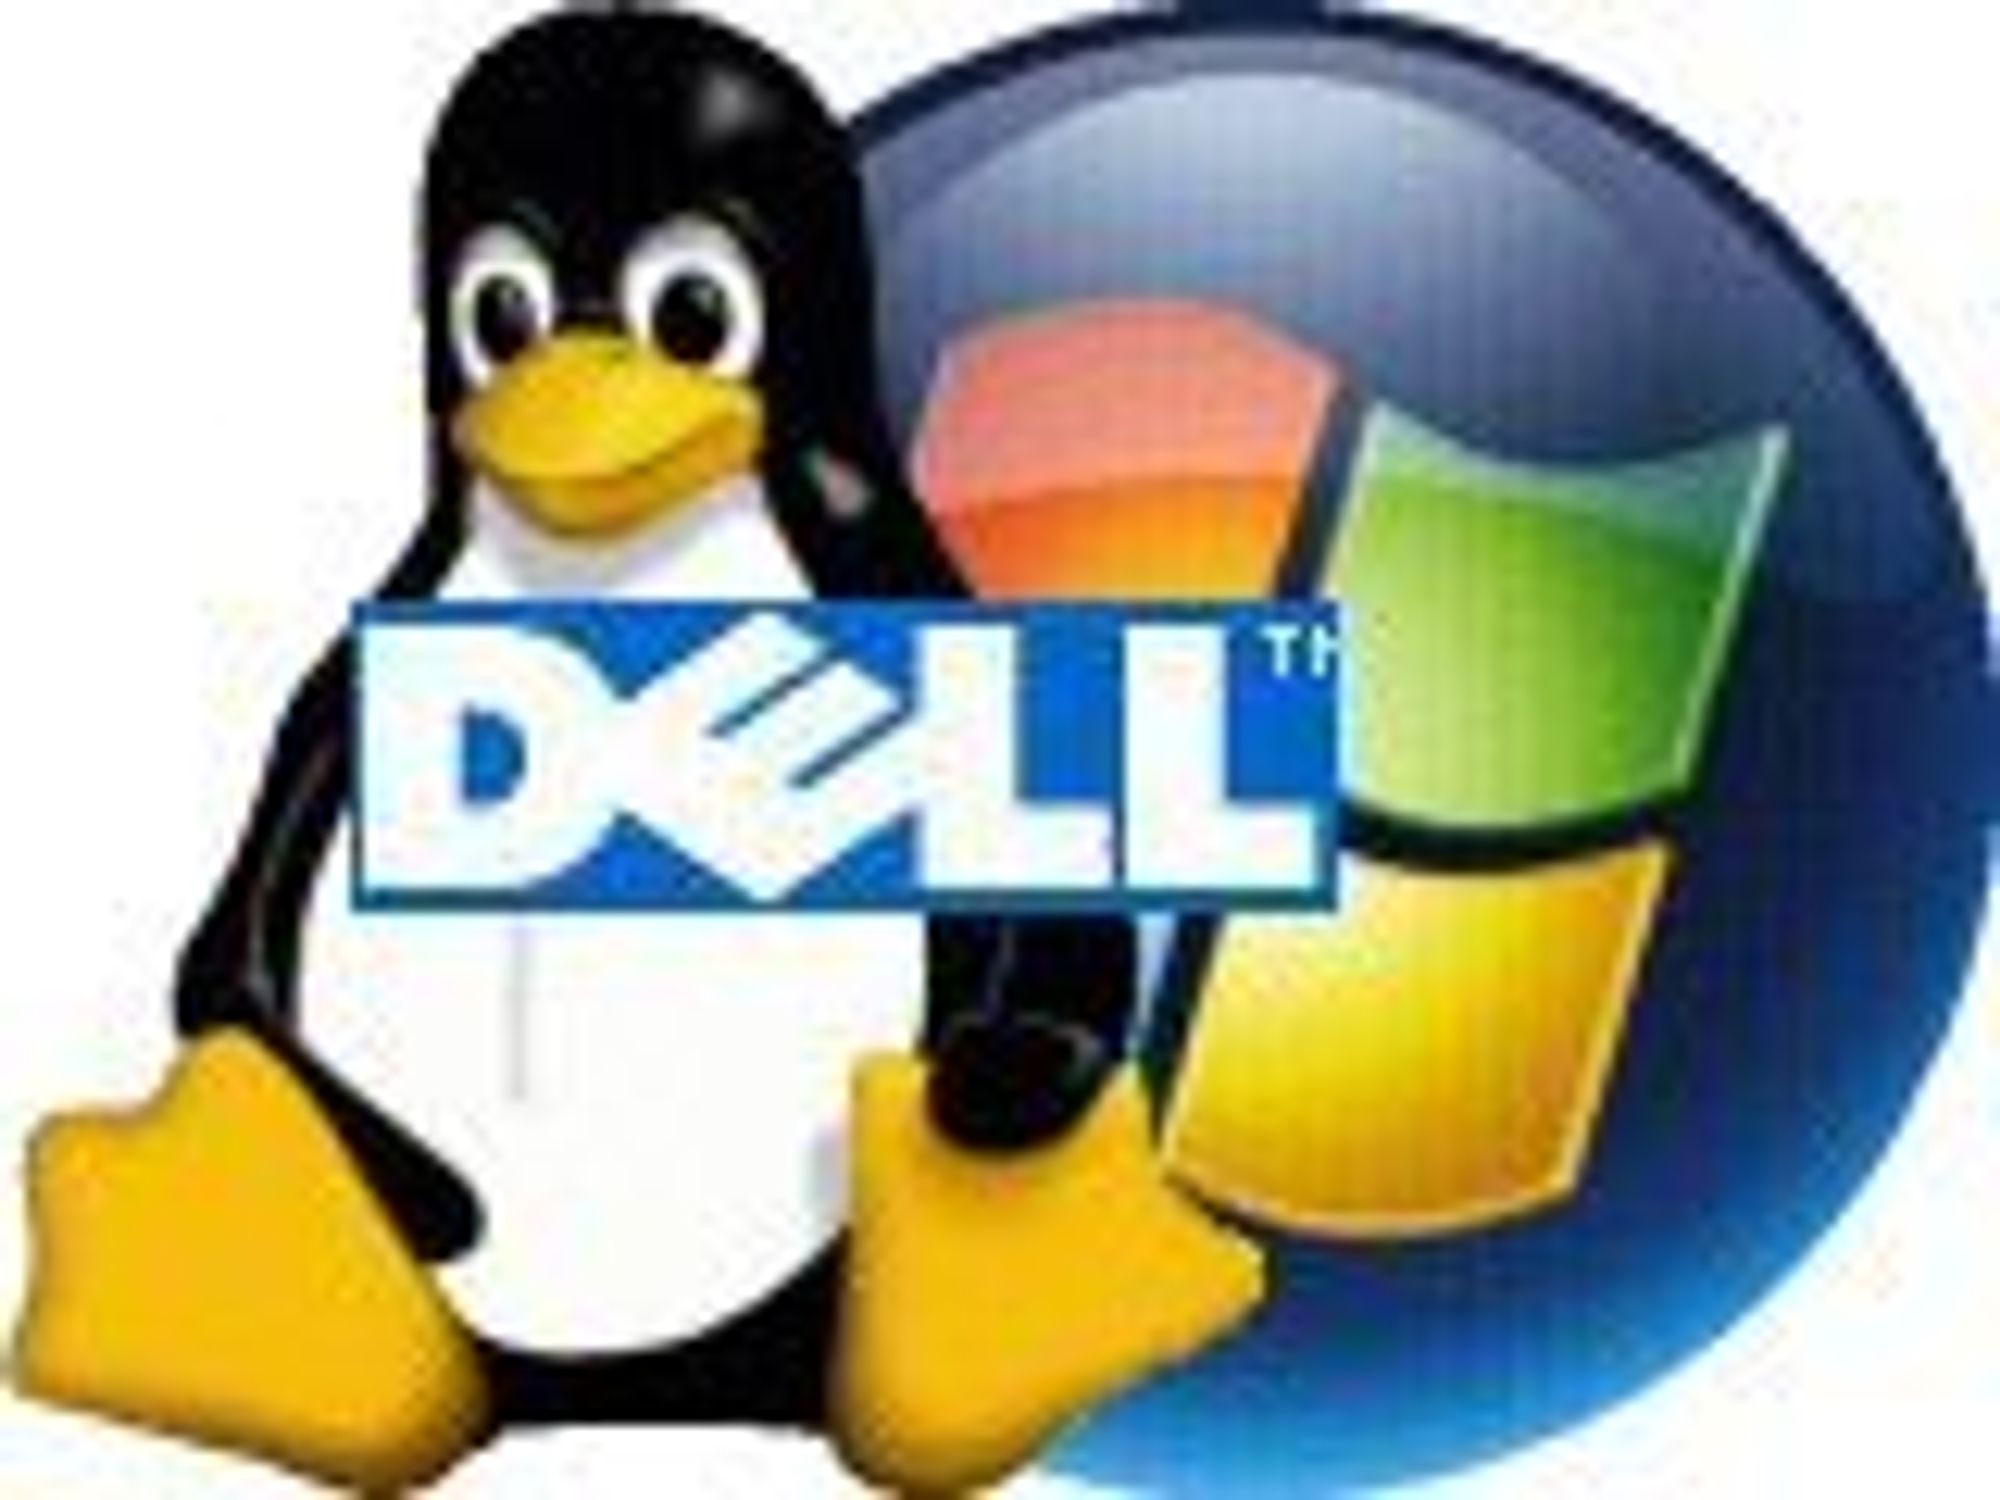 Dell innrømmer å vurdere Linux-PC-er